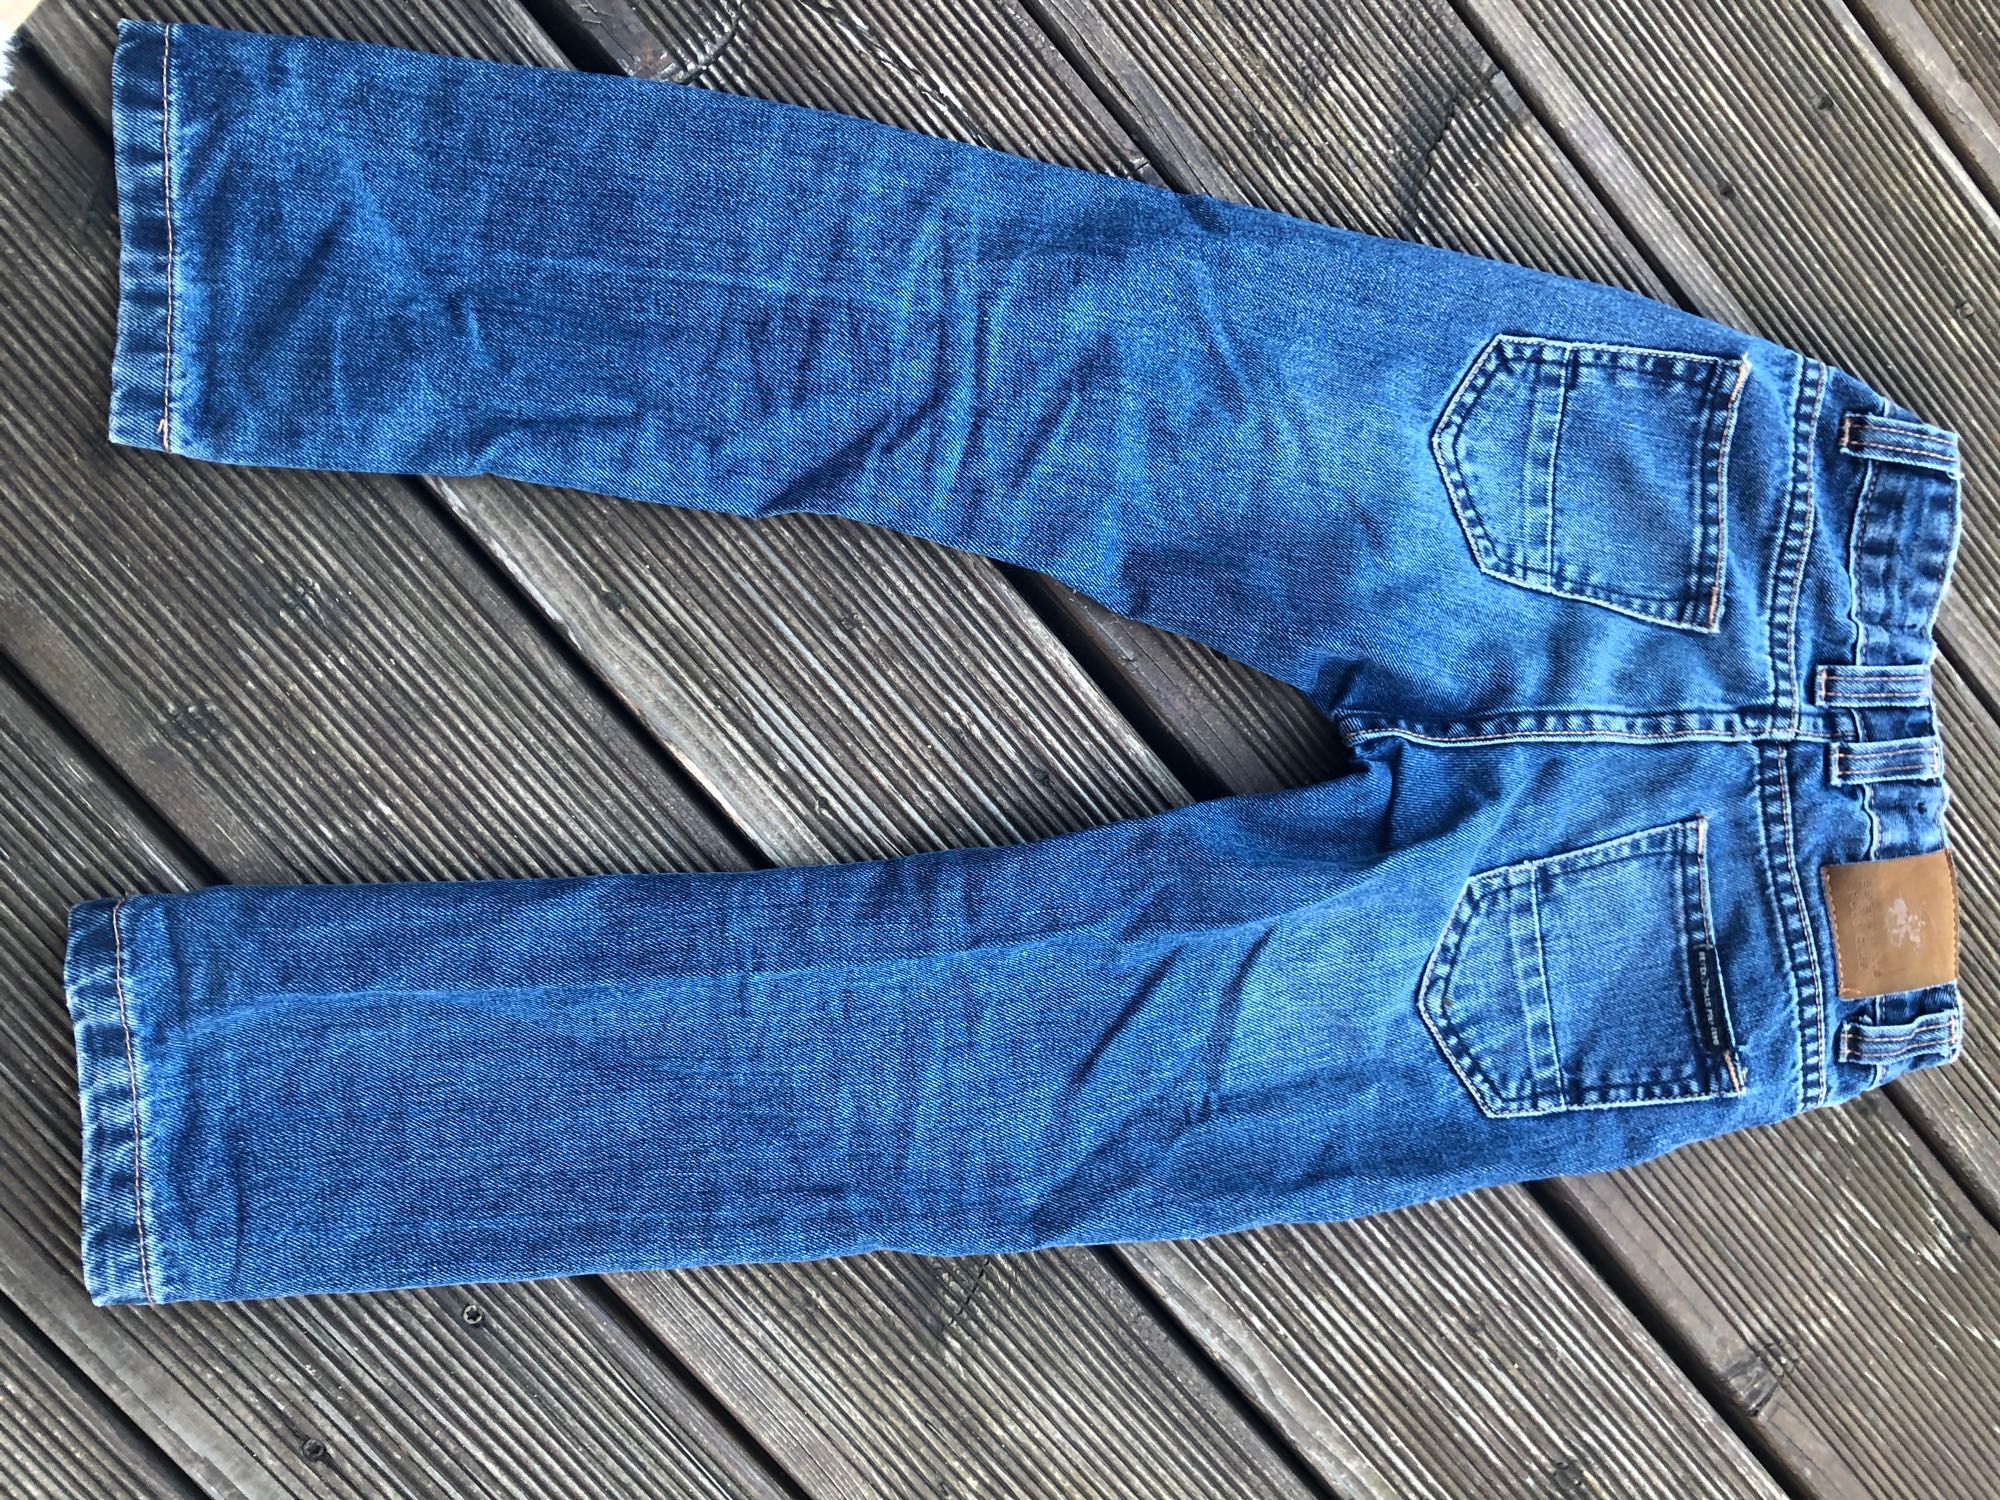 Beverly Hills Polo Club spodnie jeans bliźniaki bliźnięta 110 116